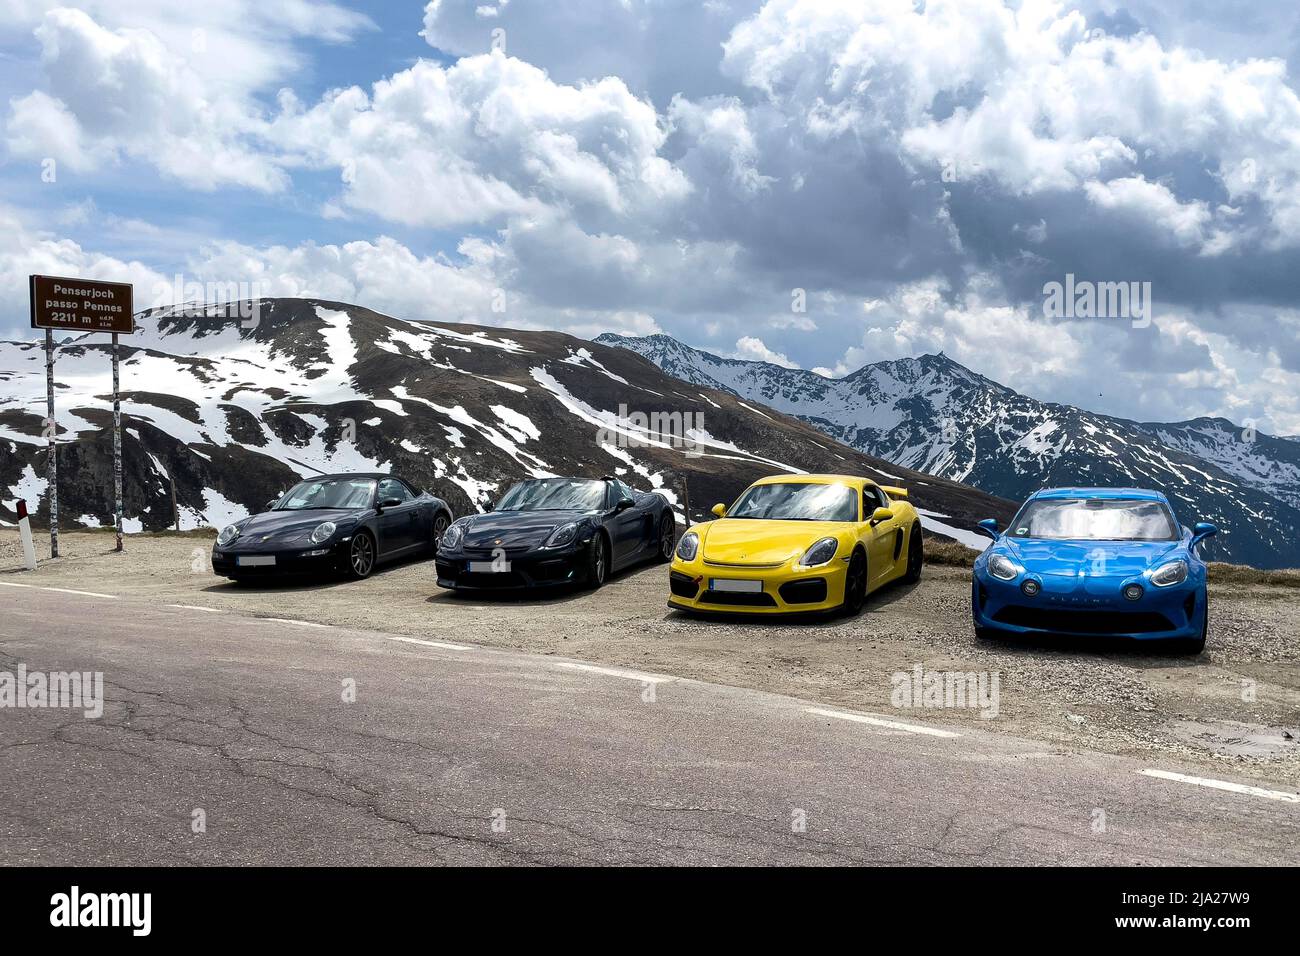 Porsche Sportwagen und Renault Alpine stehen auf dem Gipfel des Alpenpasses, Penser Joch, Penso Pennes, Provinz Bozen, Südtirol, Süden Stockfoto